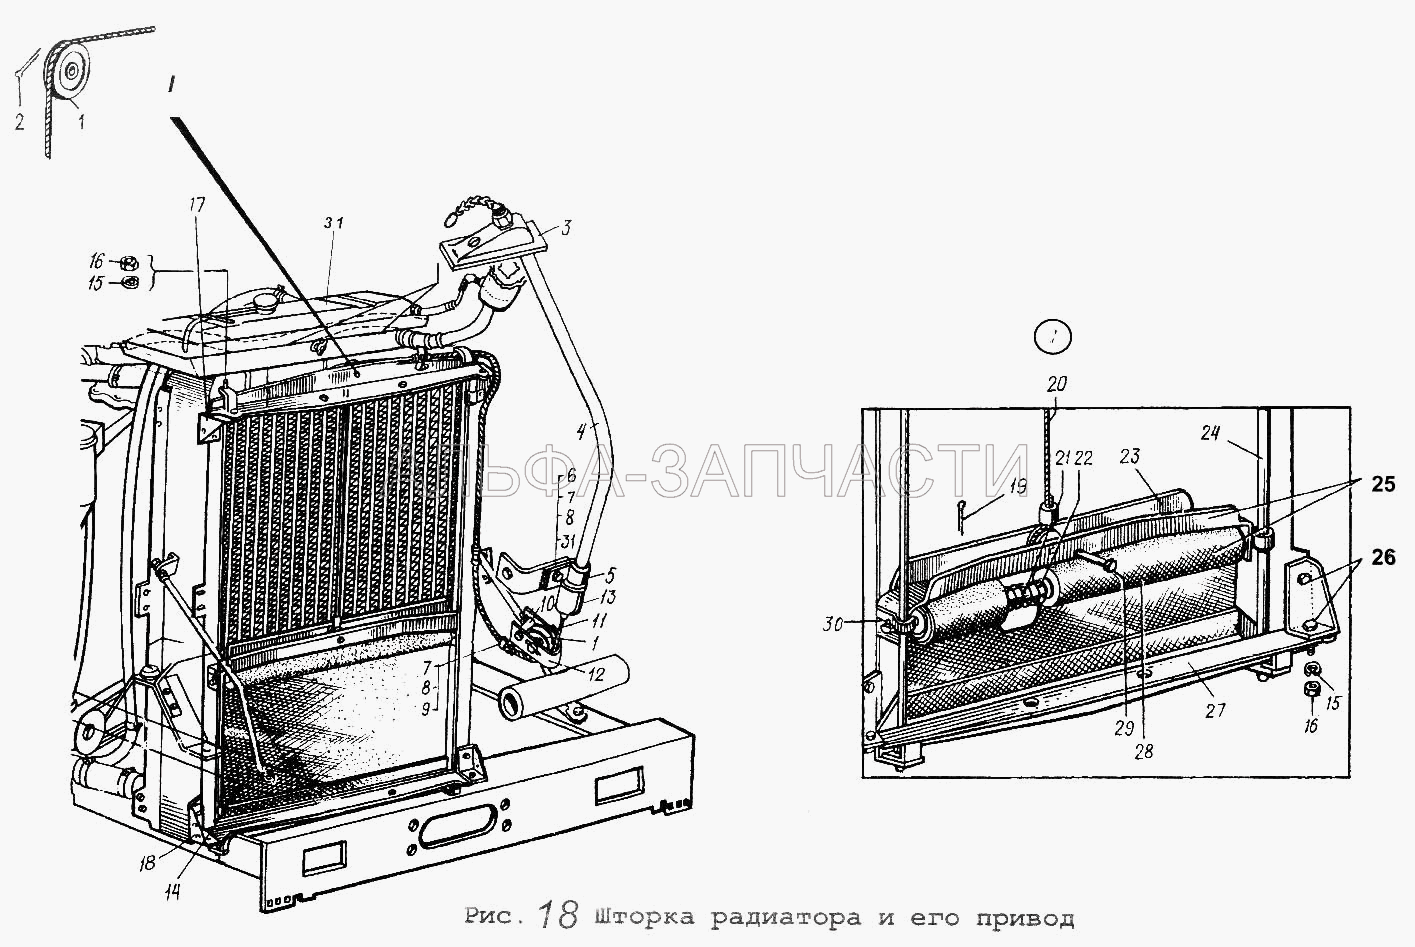 Шторка радиатора и его привод (6422-1310610 Шторка радиатора) 